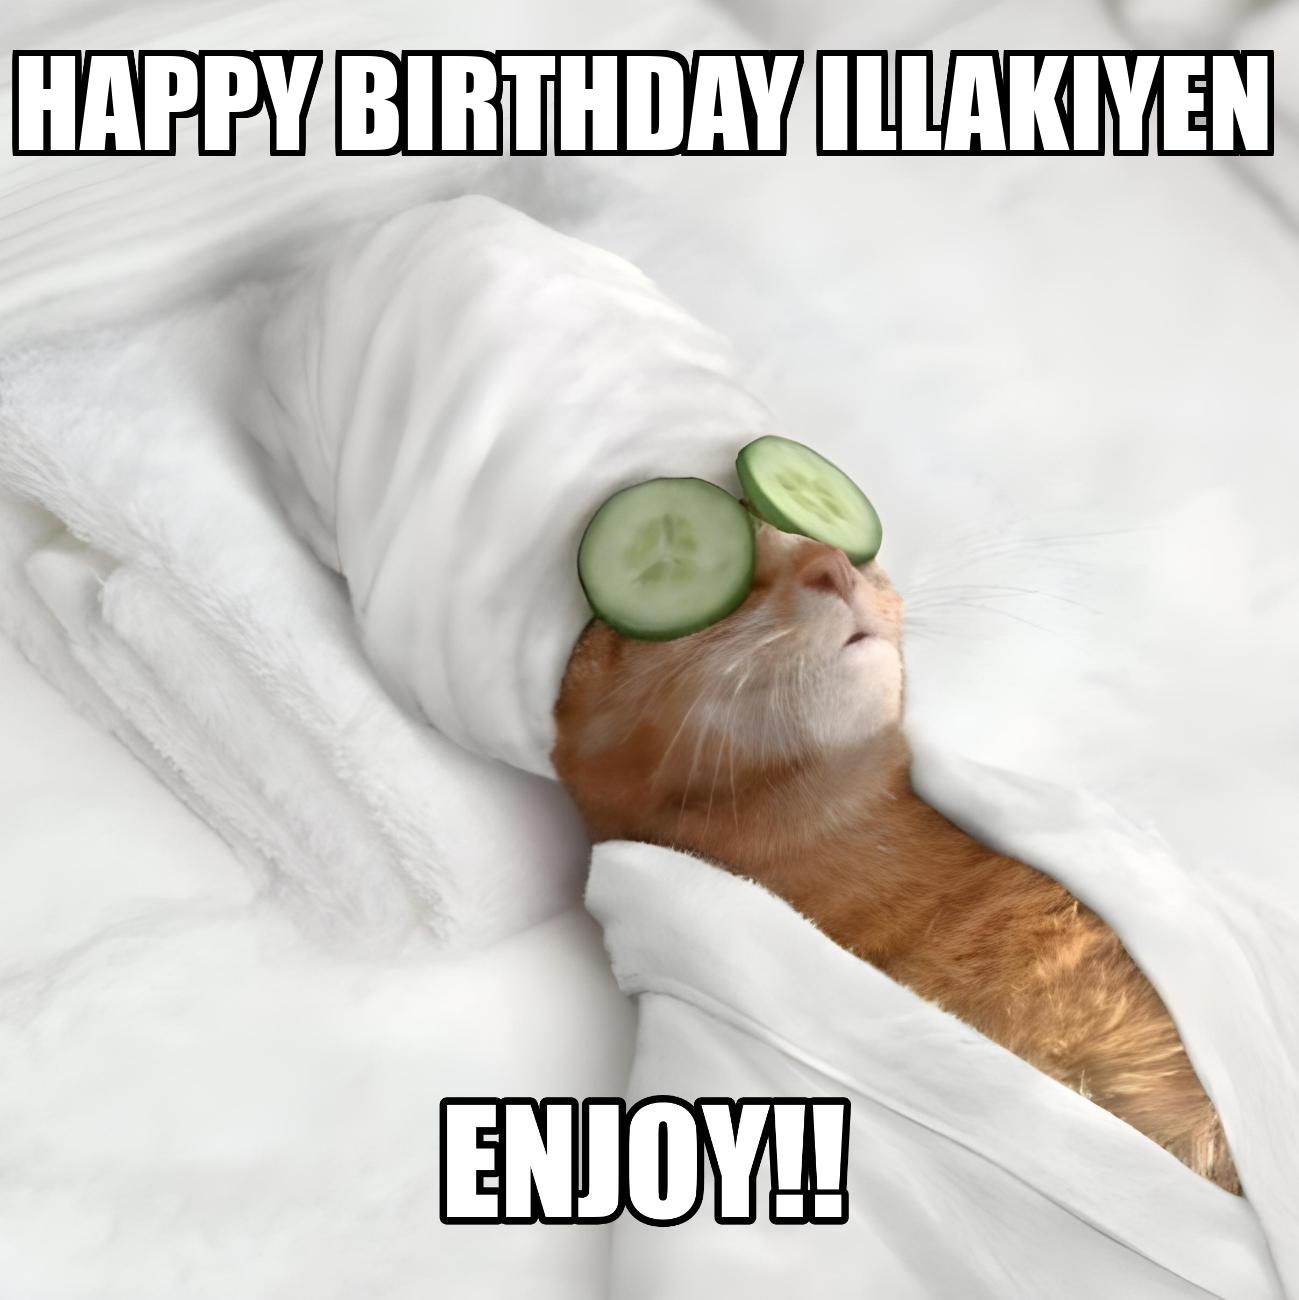 Happy Birthday Illakiyen Enjoy Cat Meme